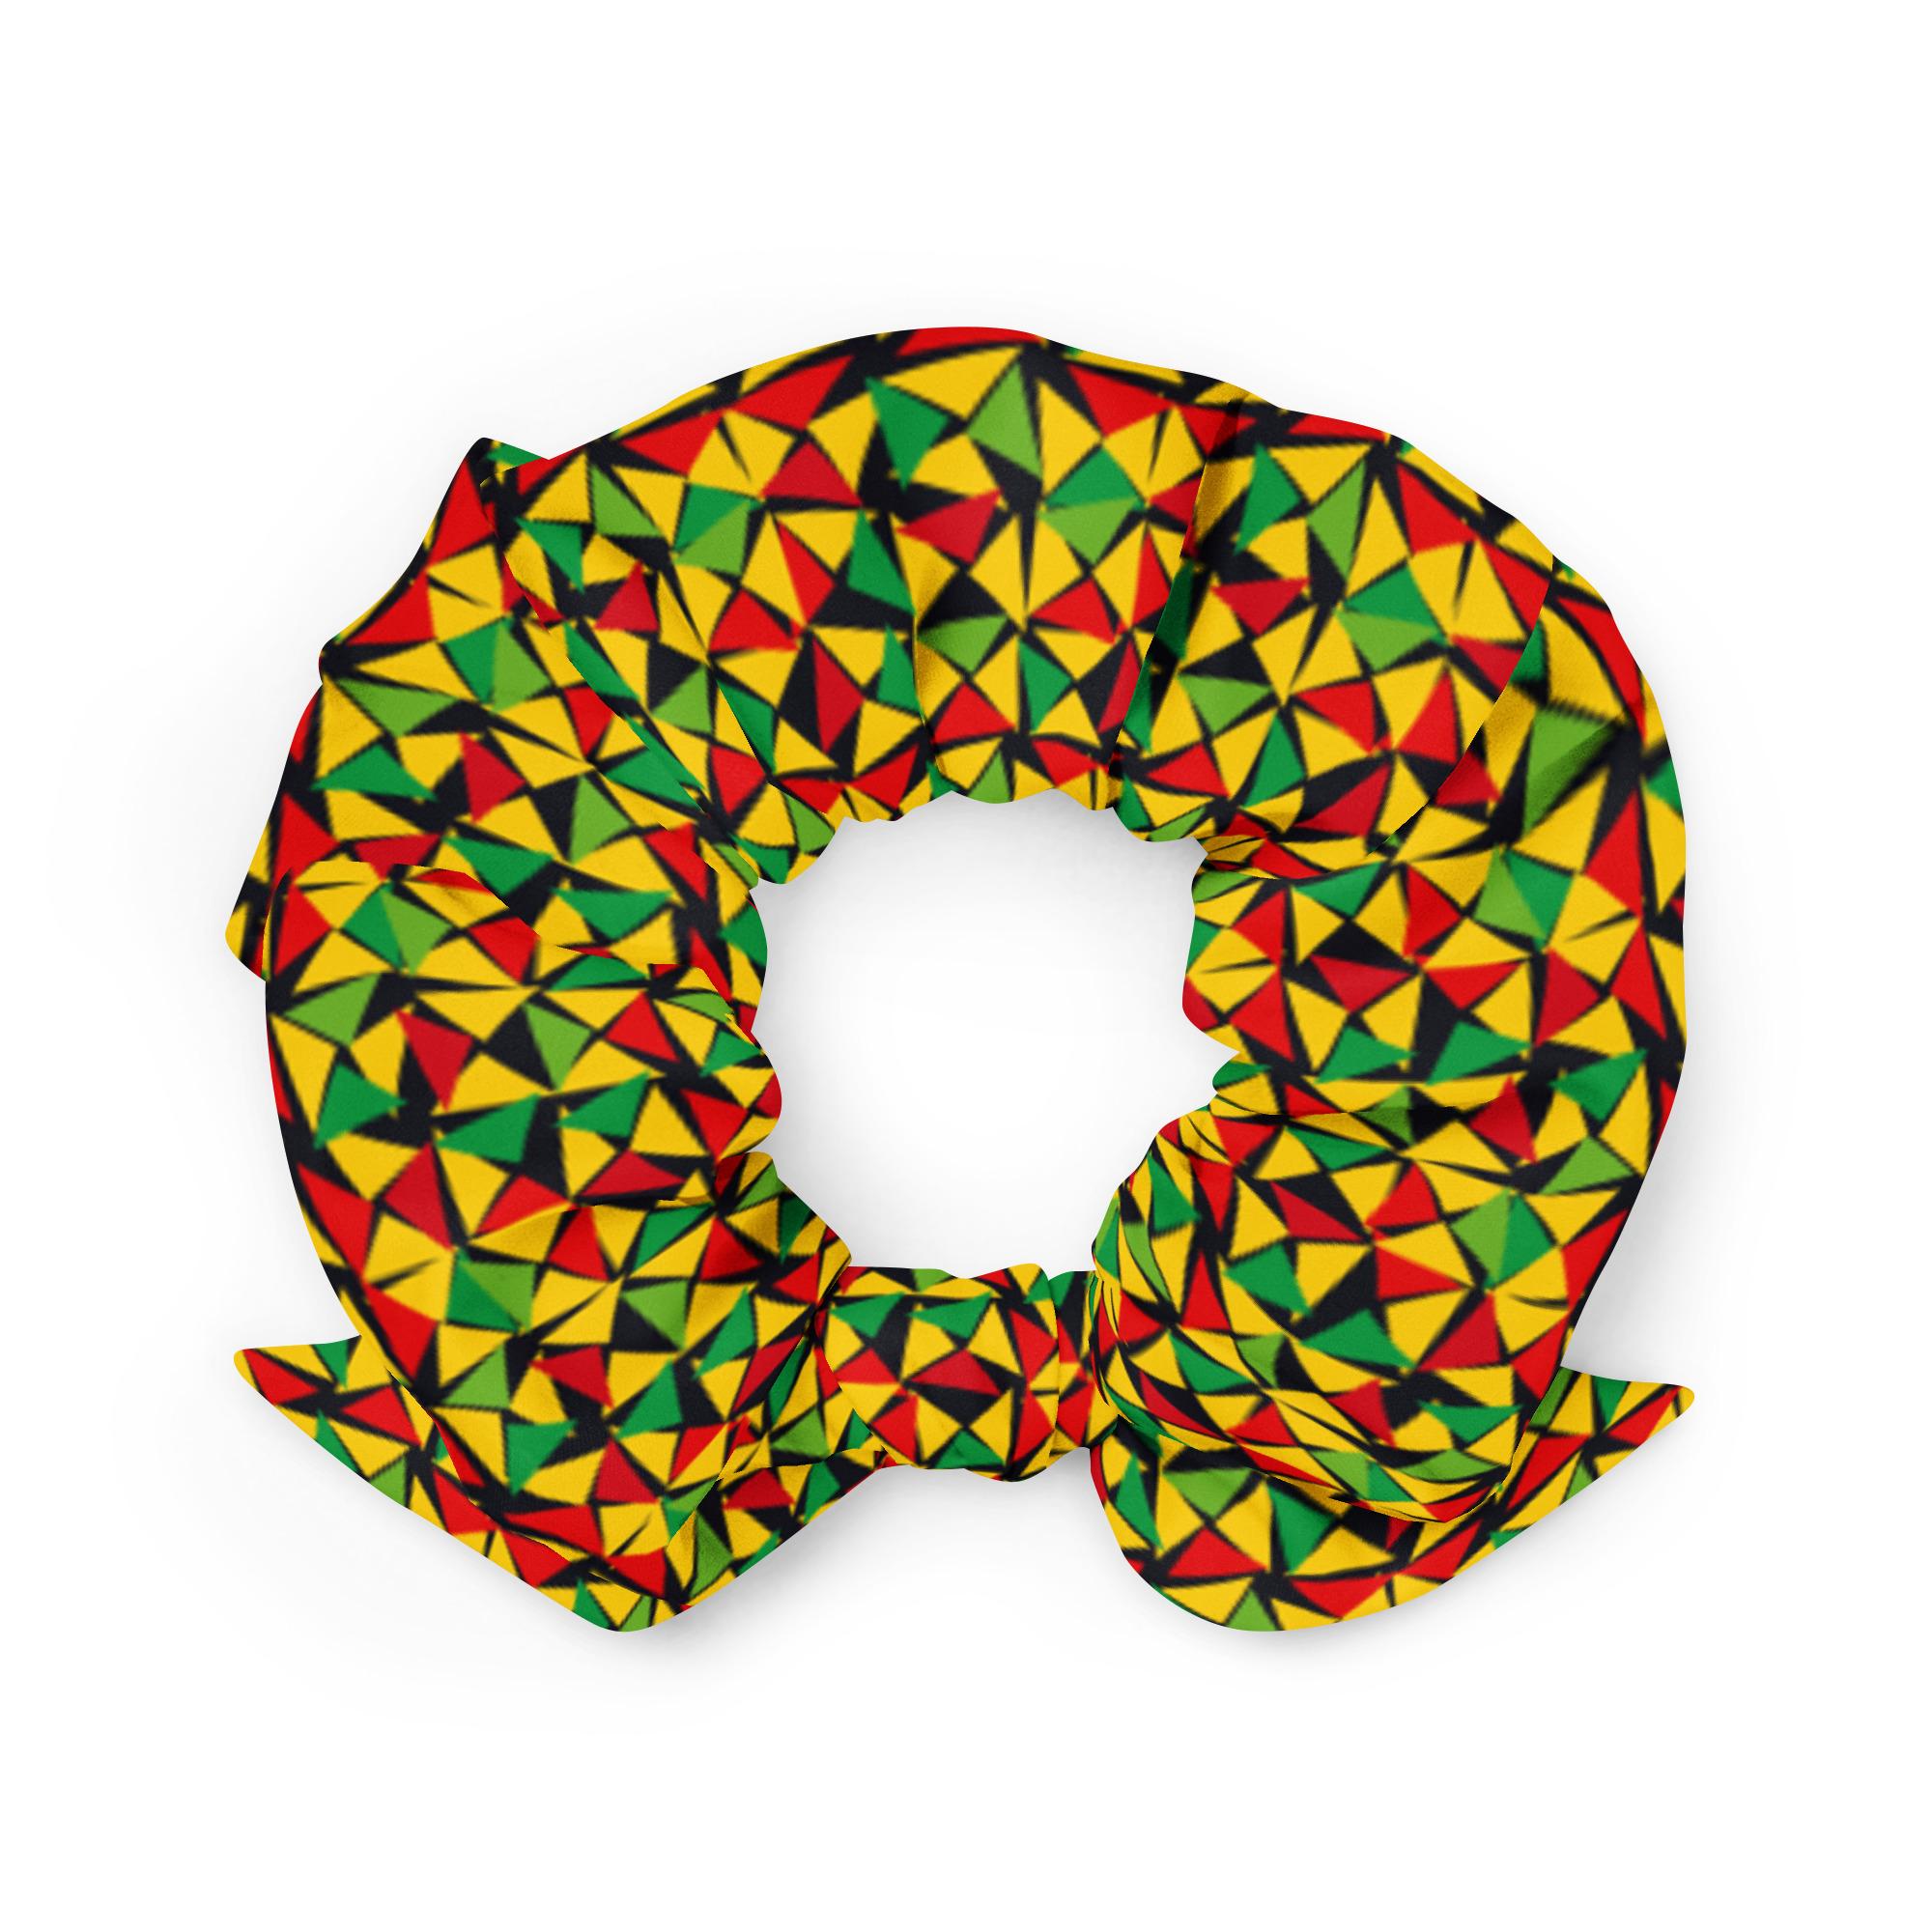 Obchod s reggae rastafariánskymi scrunchie vlasovými kravatami